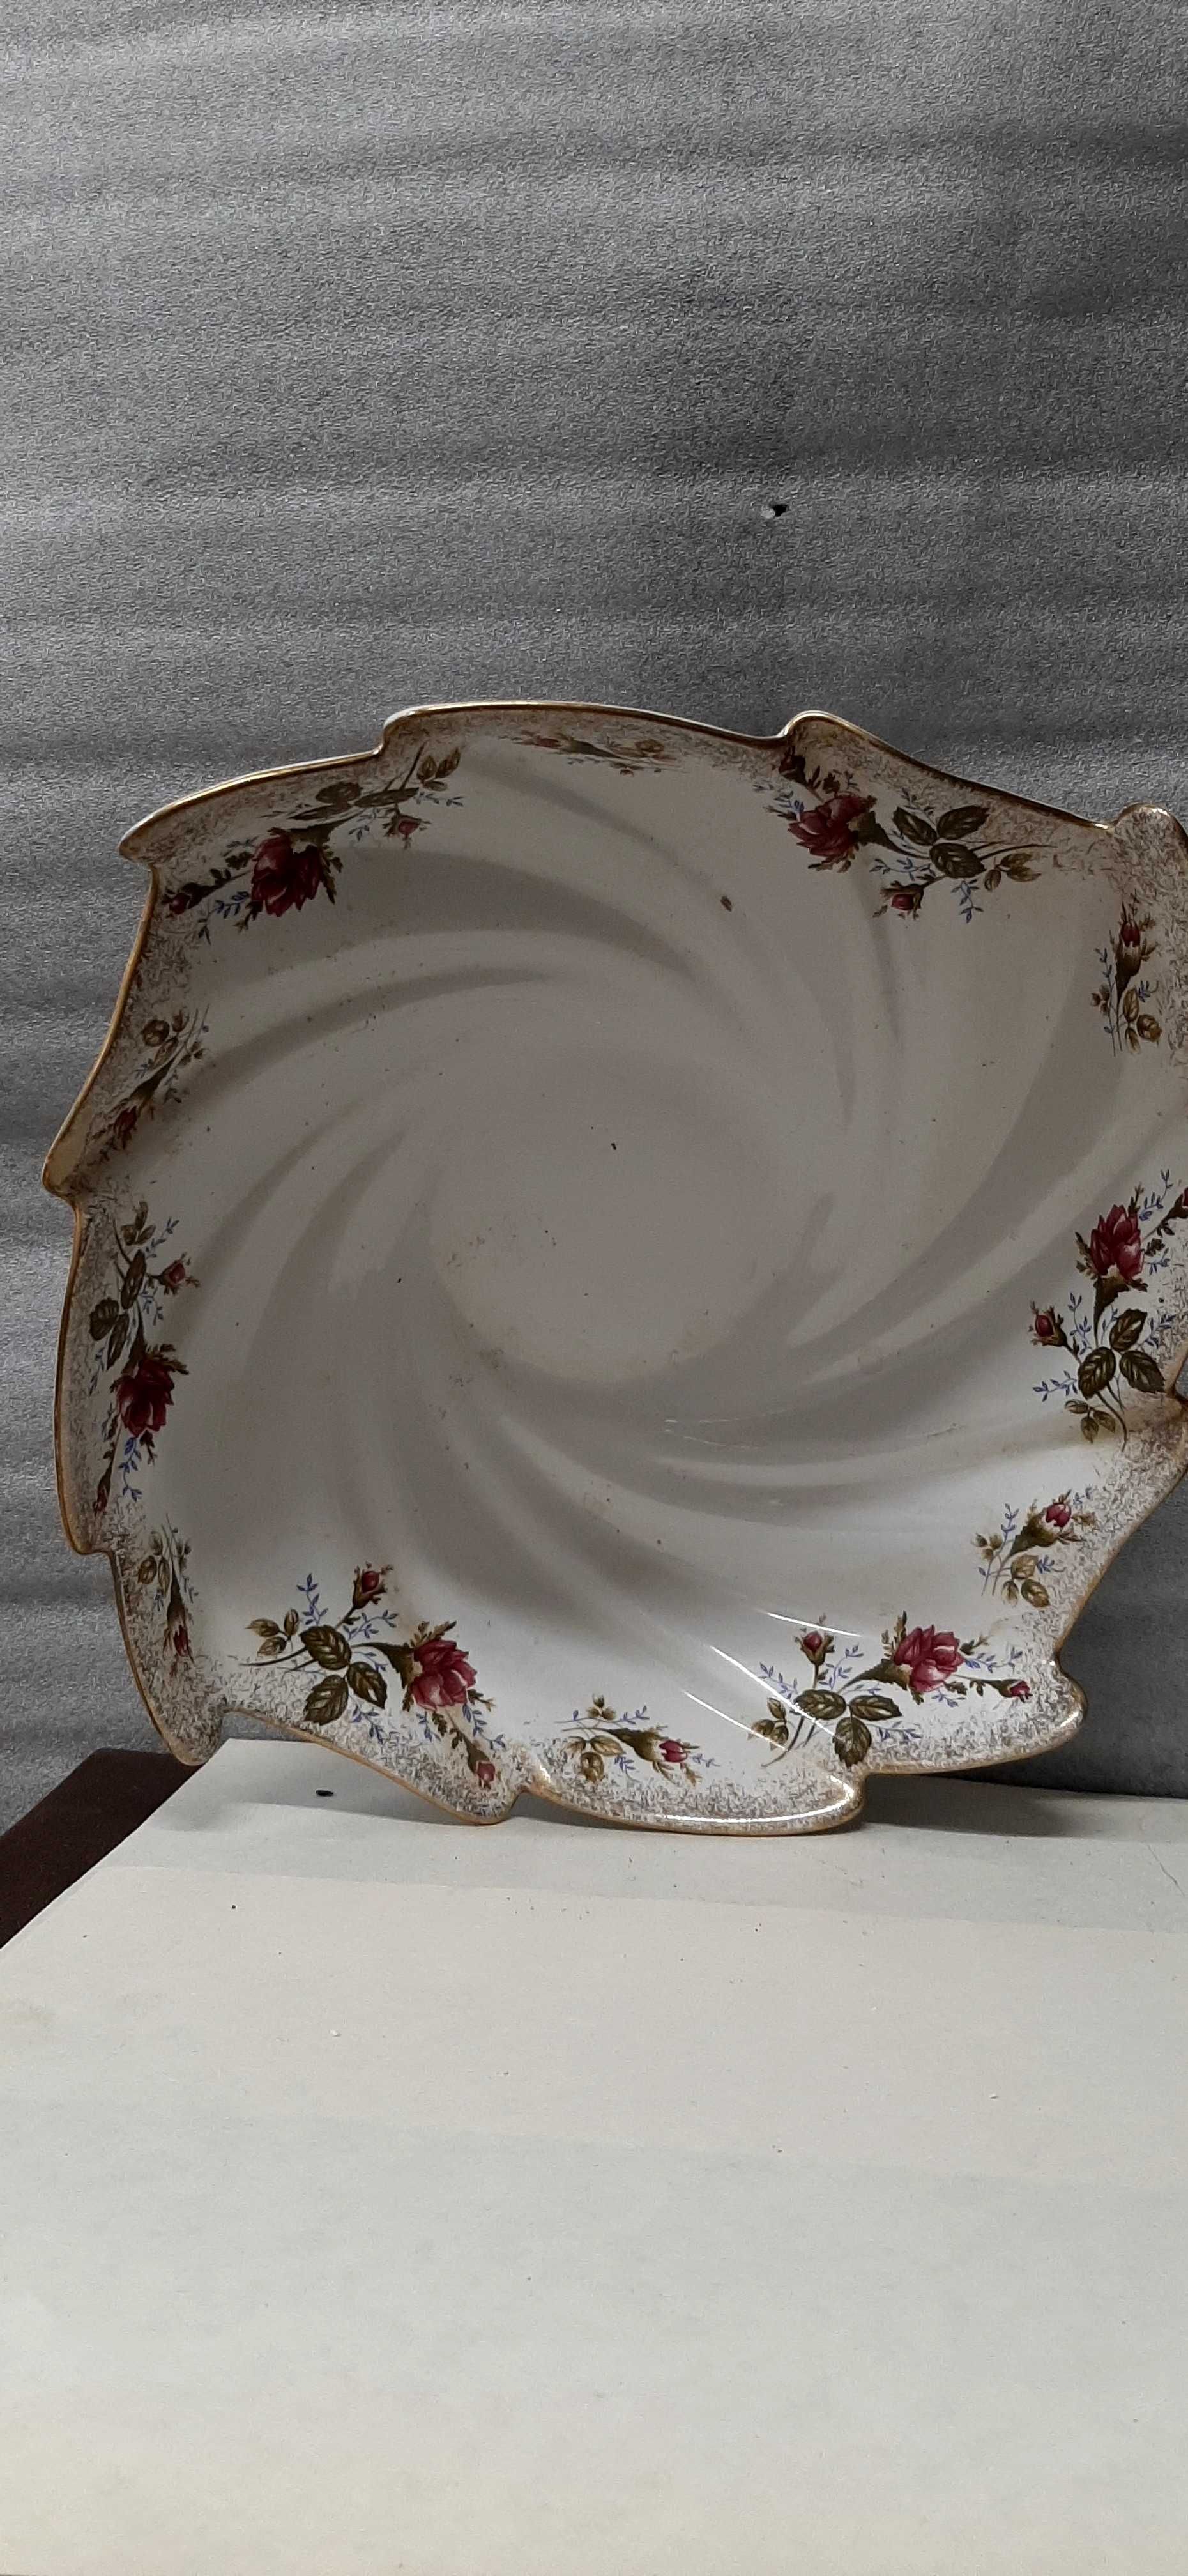 Misa porcelananowa Royal Disign vintage.